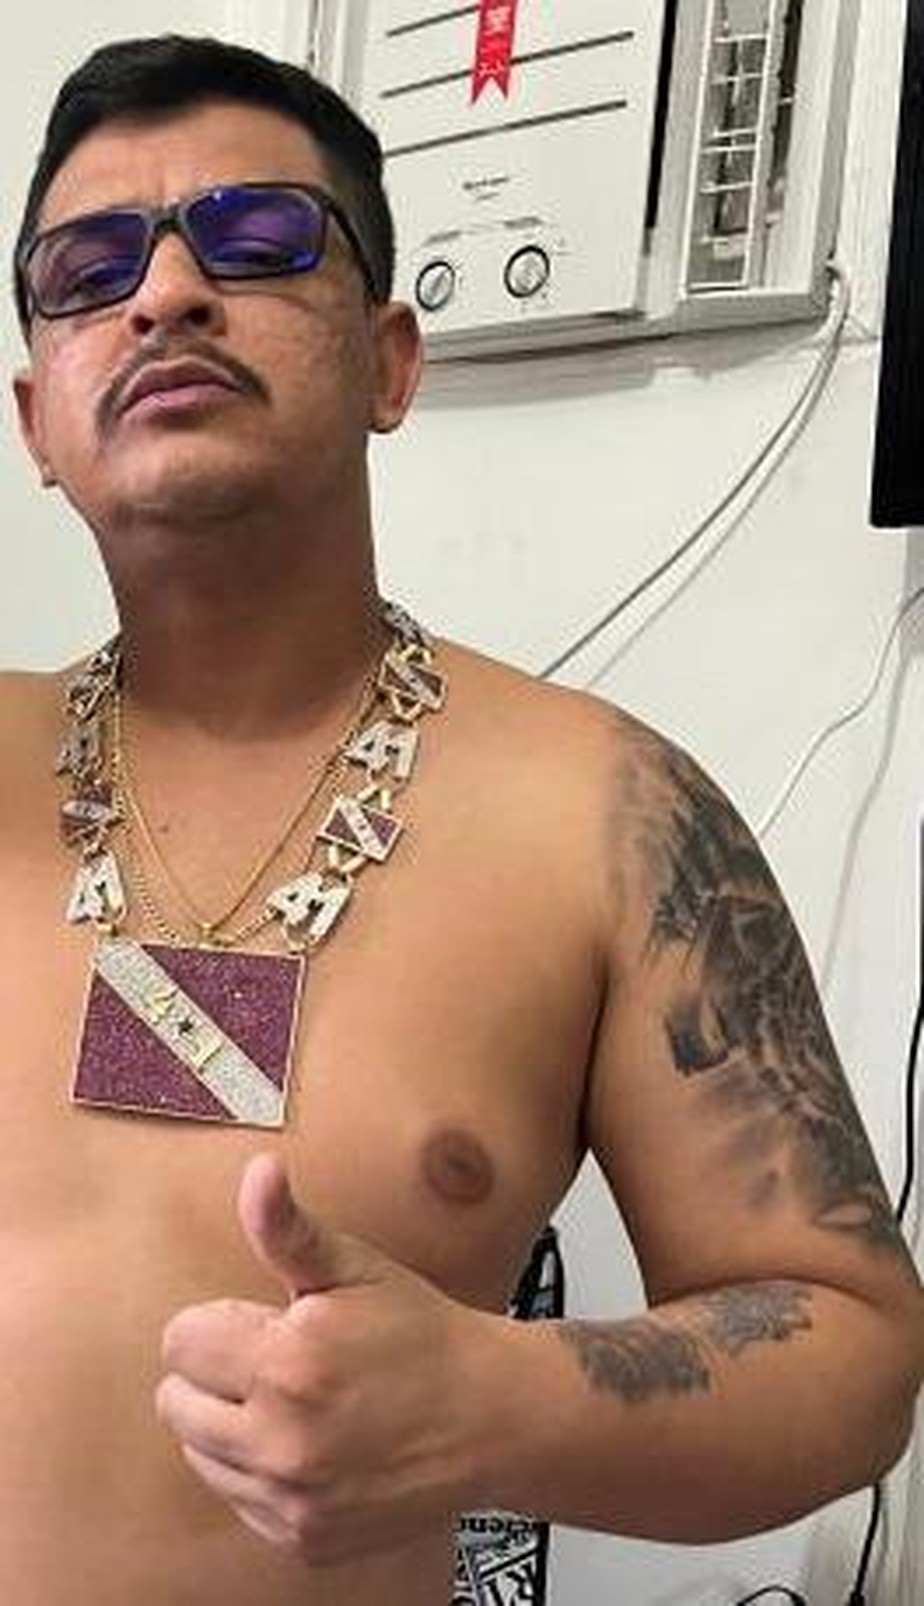 Leonardo Costa Araújo, o Leo 41, traficante apontado como o chefe do tráfico de drogas no Pará, era um dos alvos da ação policial